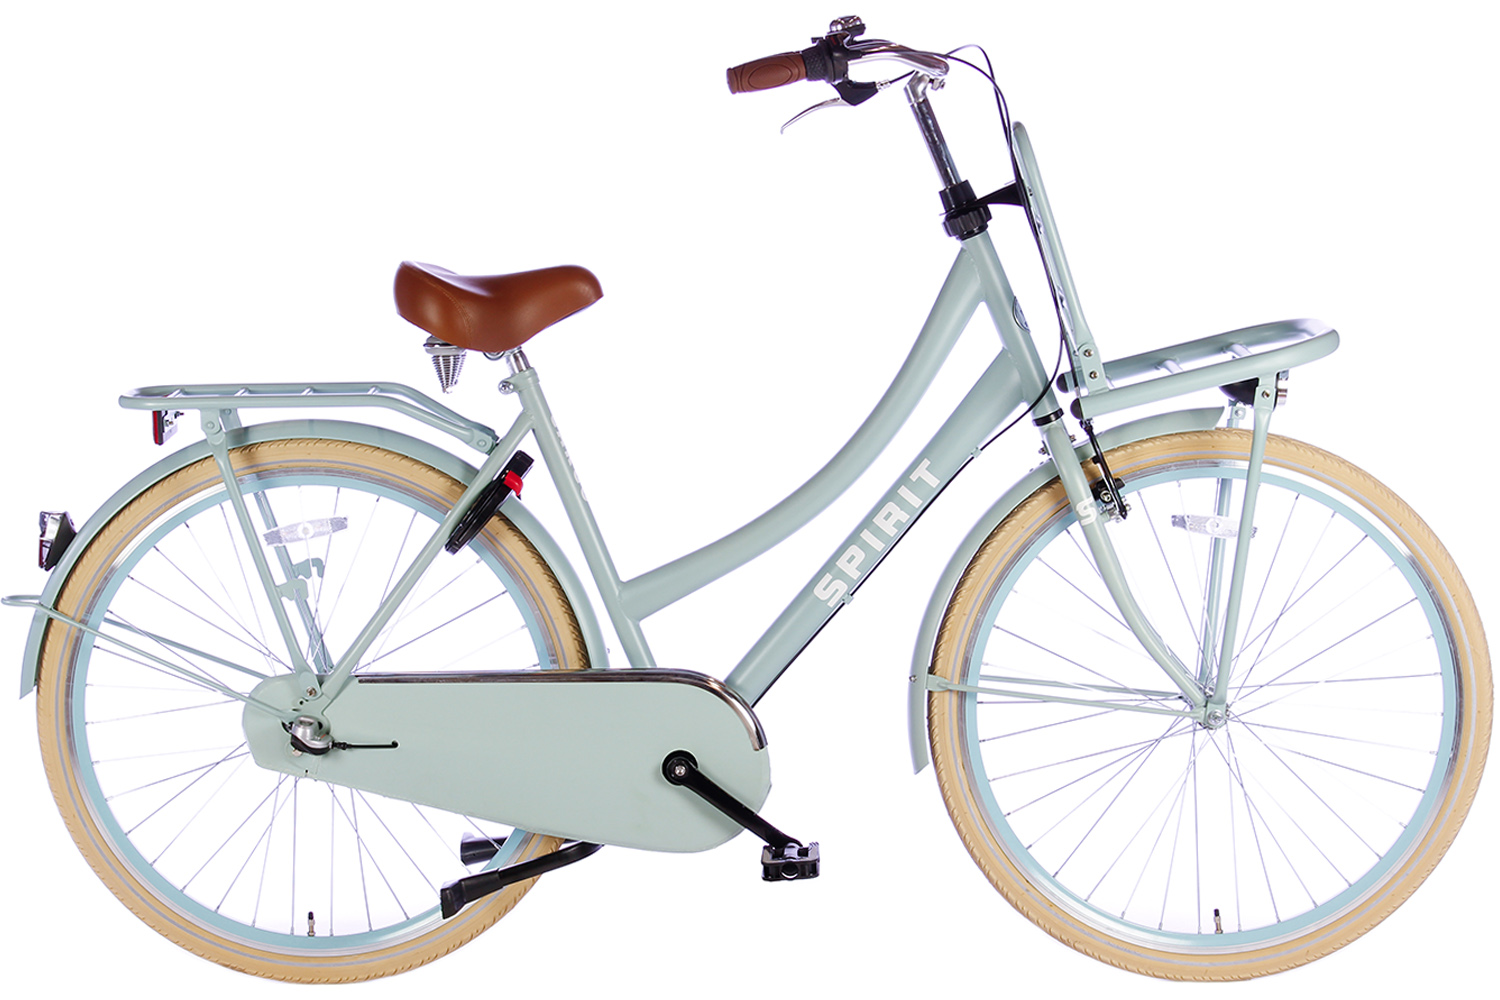 Klem Trek Motivatie Spirit Cargo Plus N3 Groen 28 inch Transportfiets dames | 379,- |  City-Bikes.nl